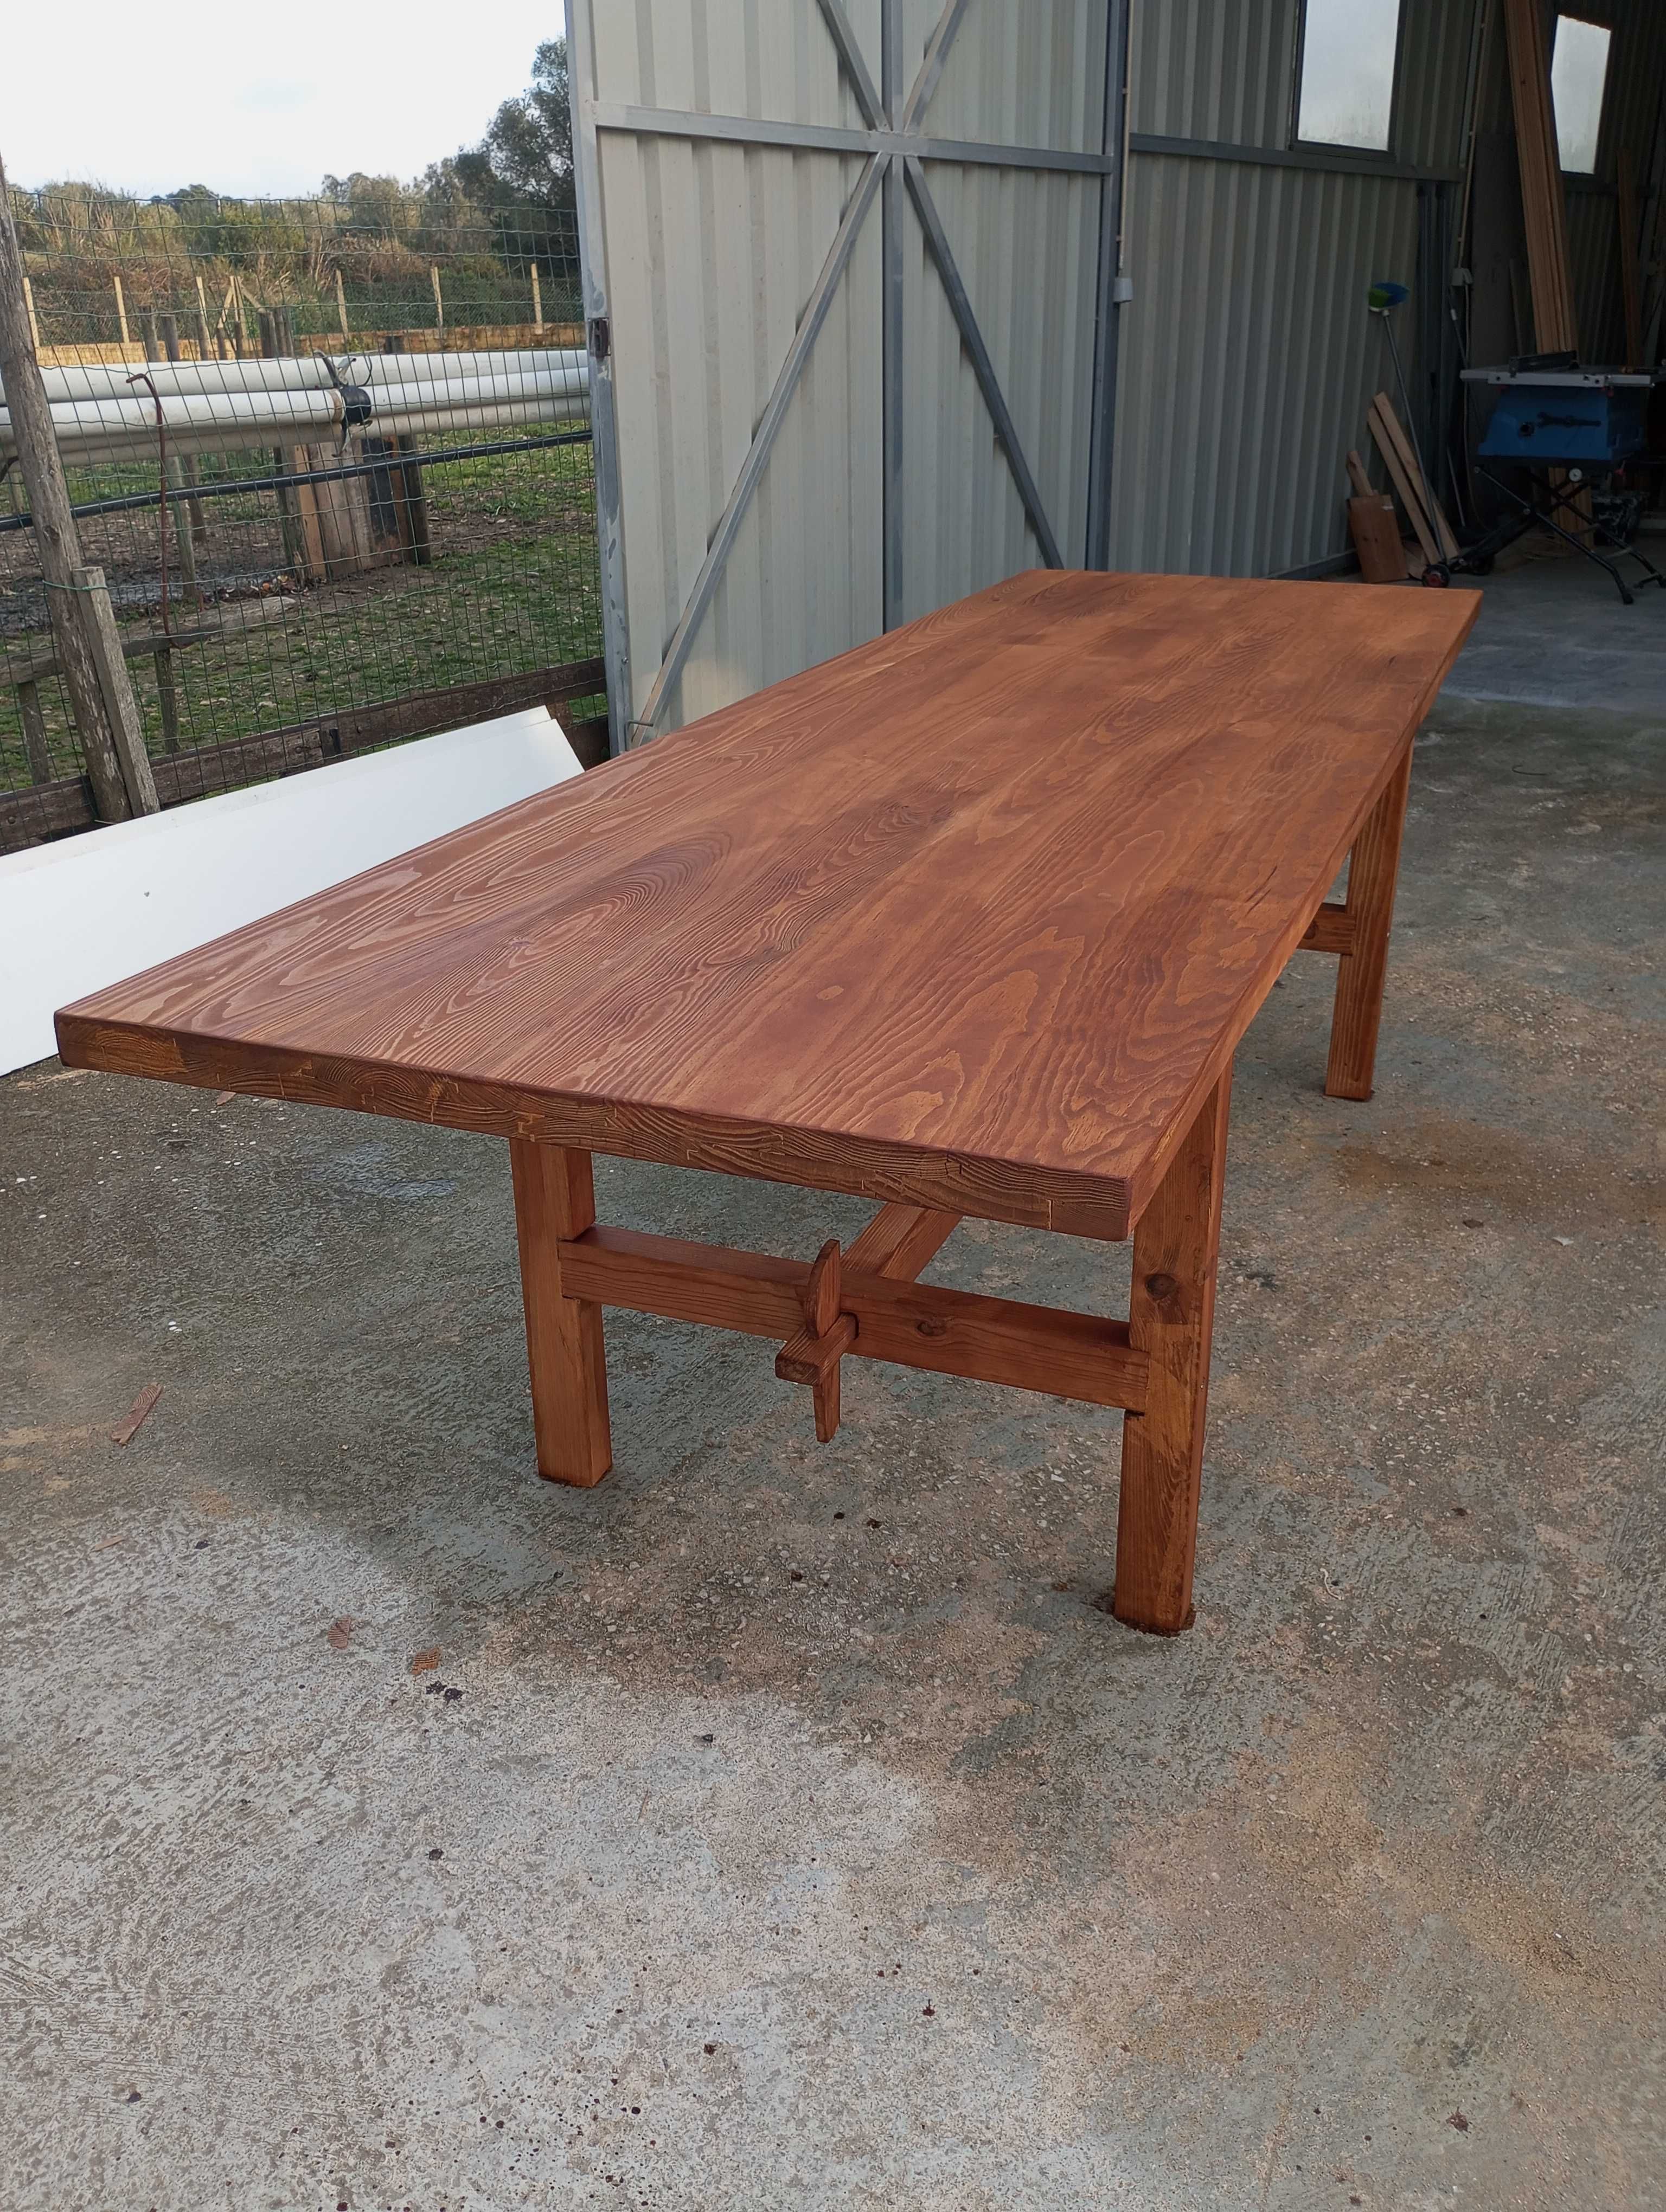 Vendo mesa rústica. Toda construída com madeira de pinho mocissa.